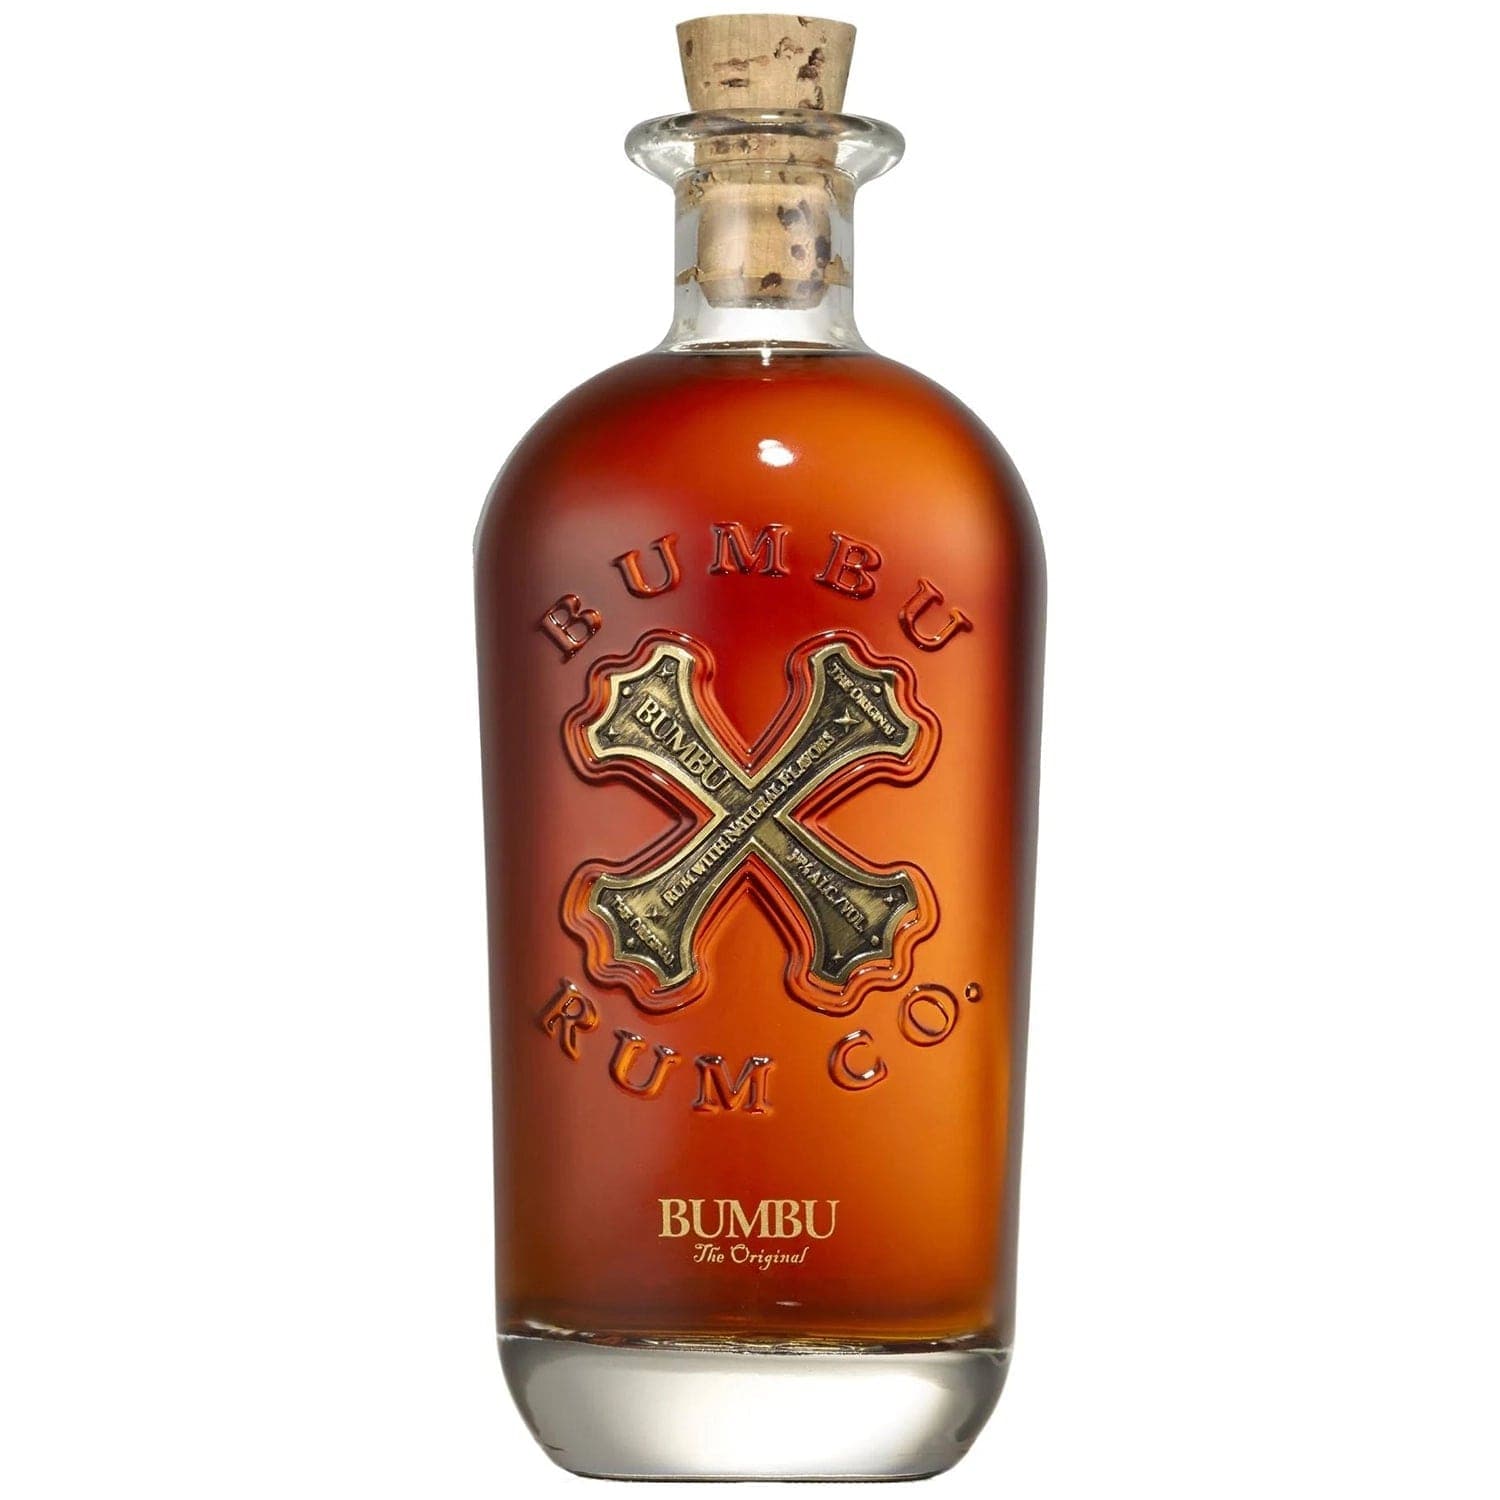 Bumbu The Original Rum - Barbank